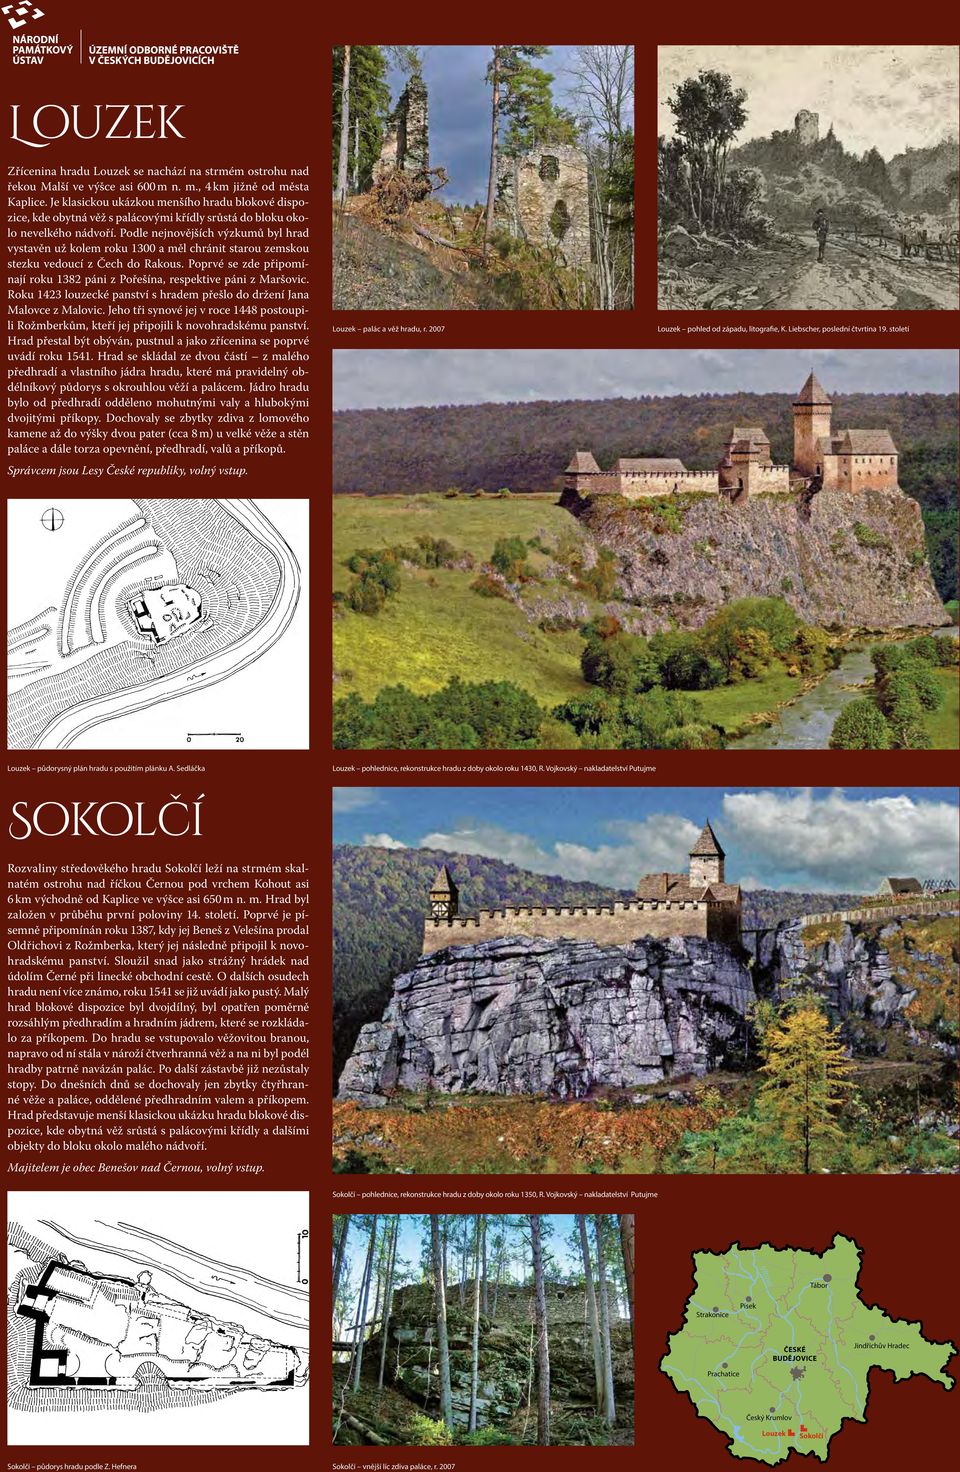 Podle nejnovějších výzkumů byl hrad vystavěn už kolem roku 1300 a měl chránit starou zemskou stezku vedoucí z Čech do Rakous.